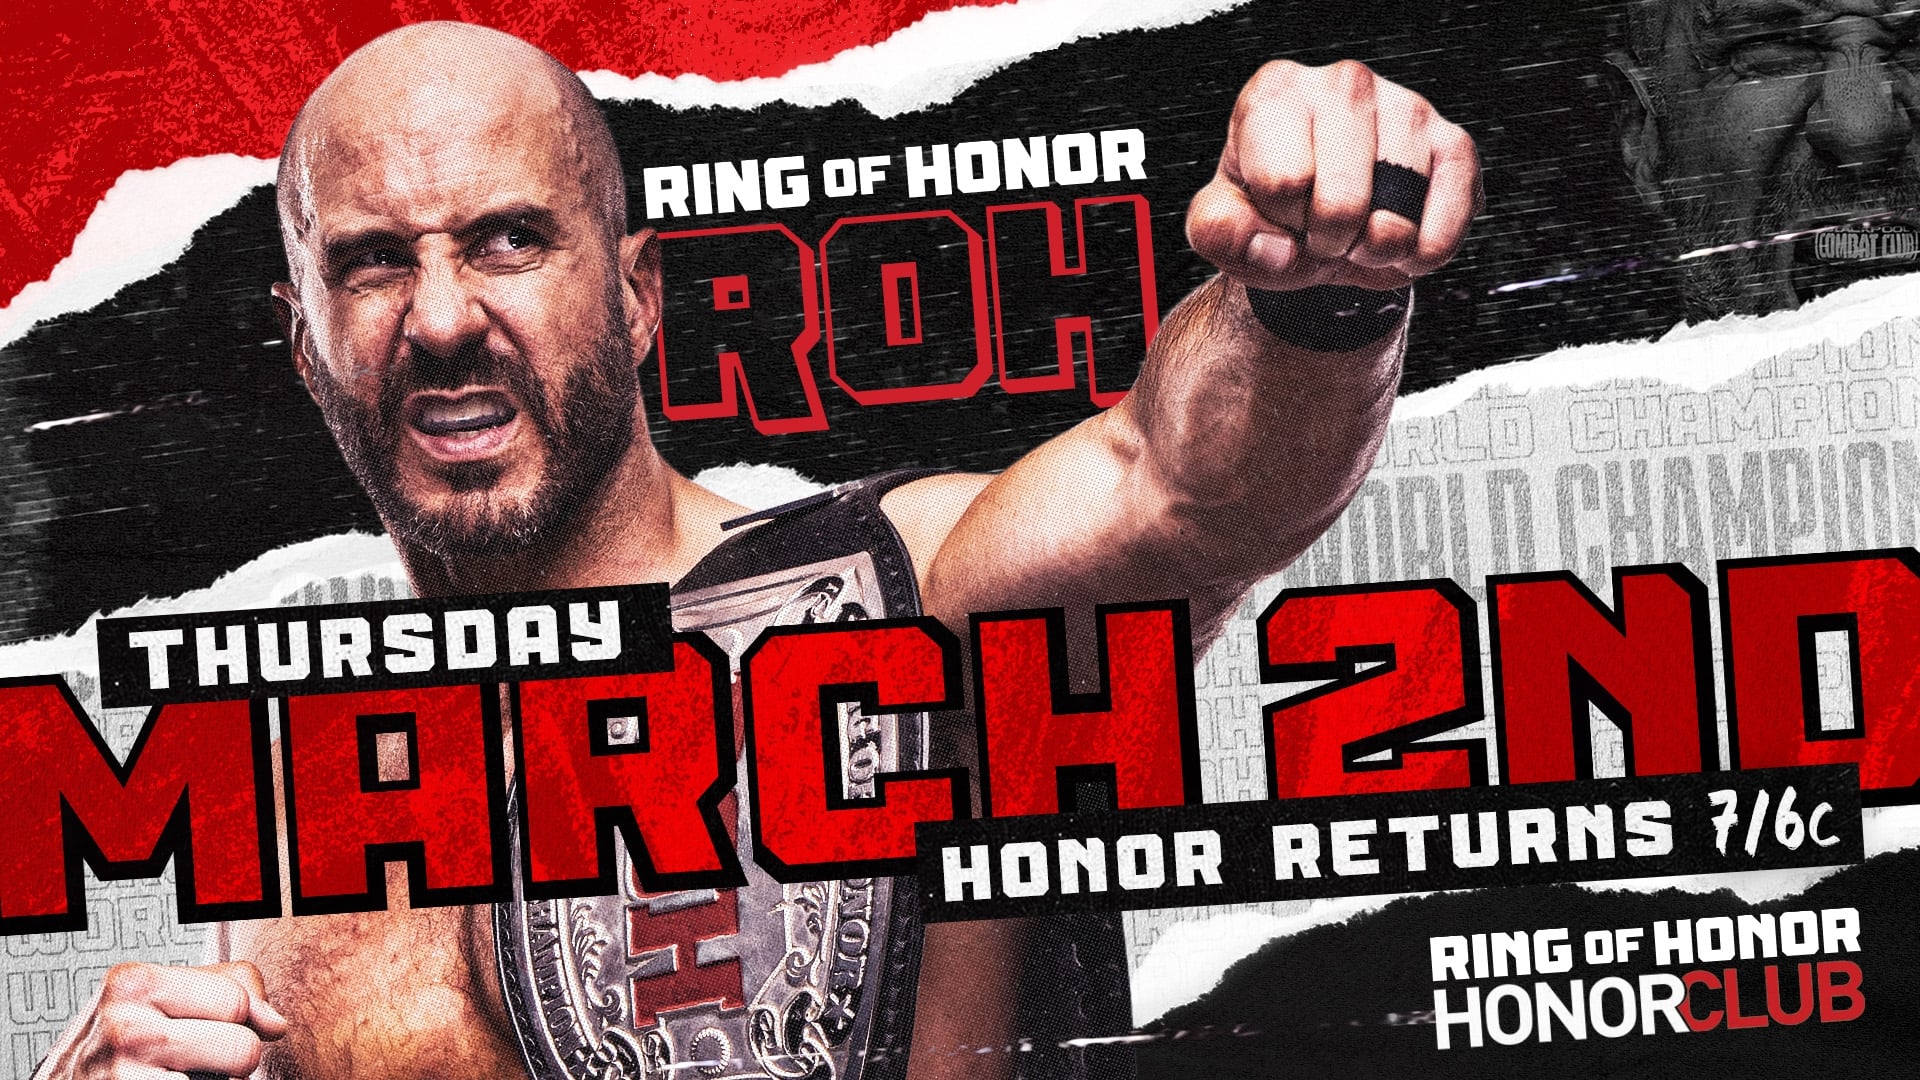 Ring Of Honor Wrestling